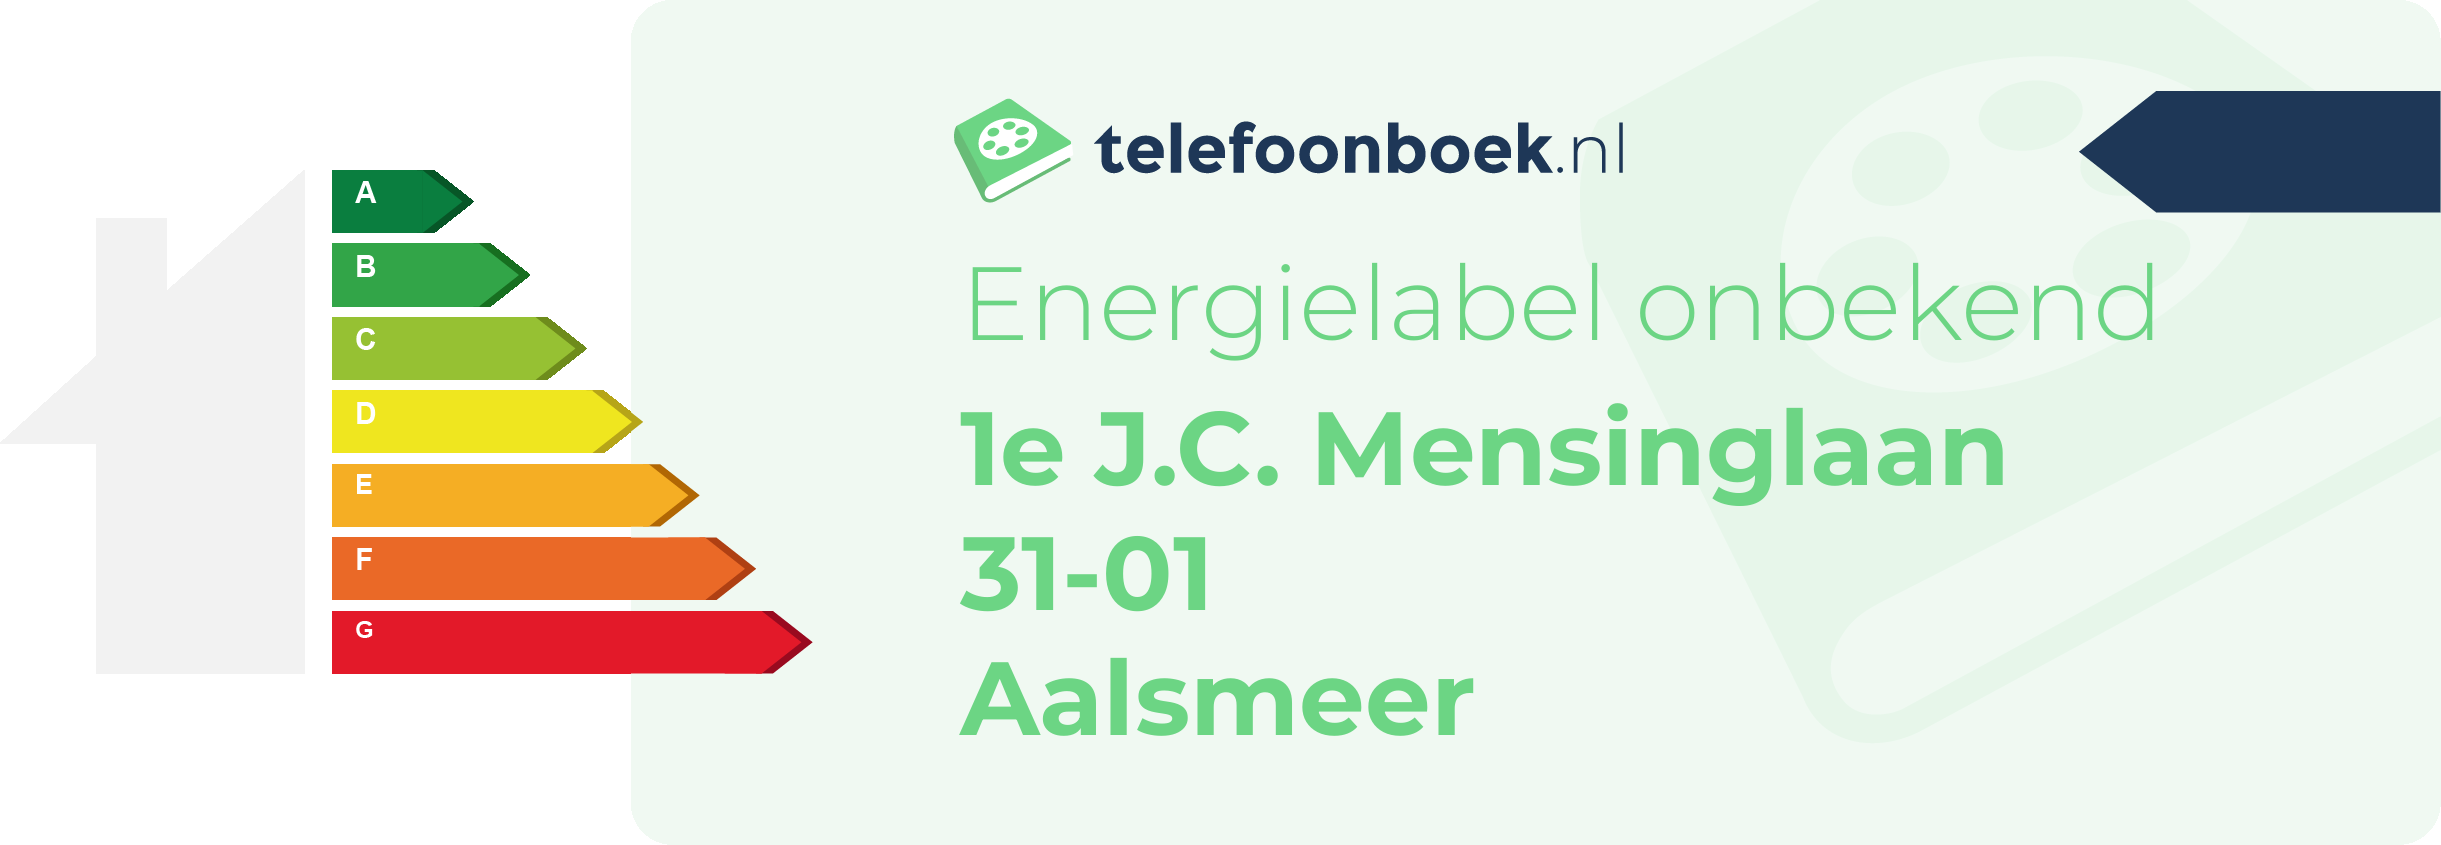 Energielabel 1e J.C. Mensinglaan 31-01 Aalsmeer